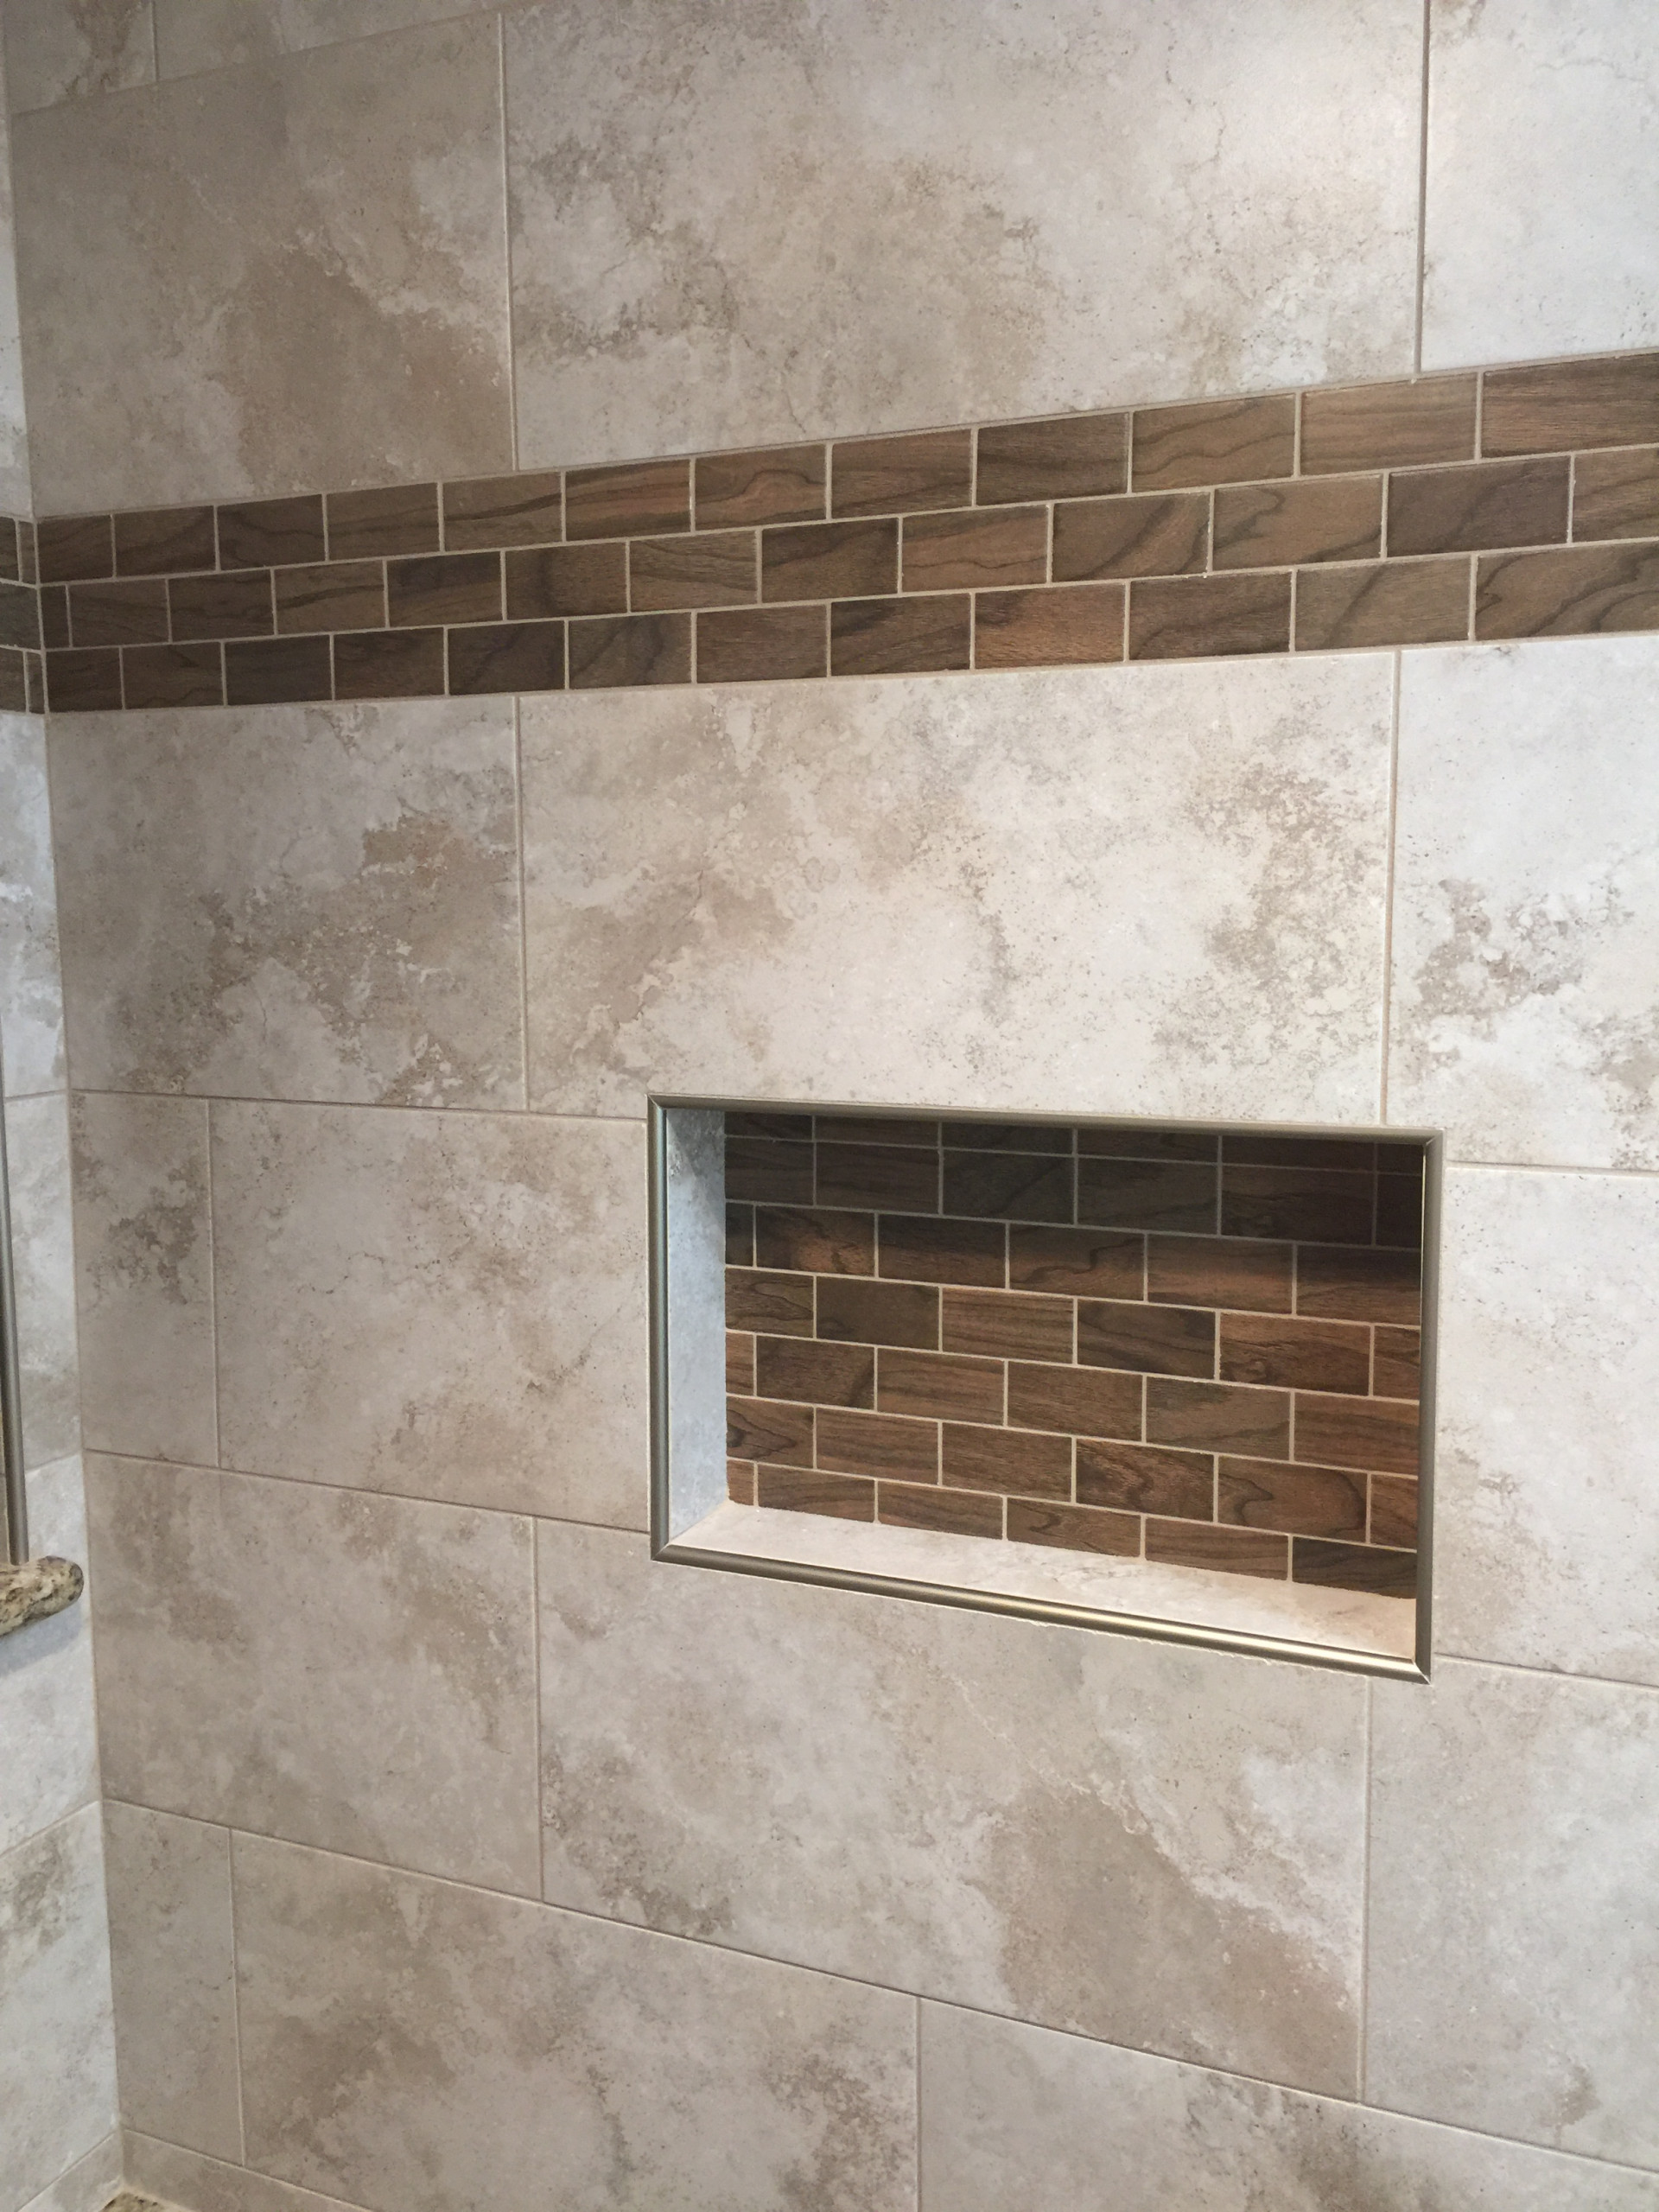 Rabbit Trail - Master Bathroom Tile Shower - 2016